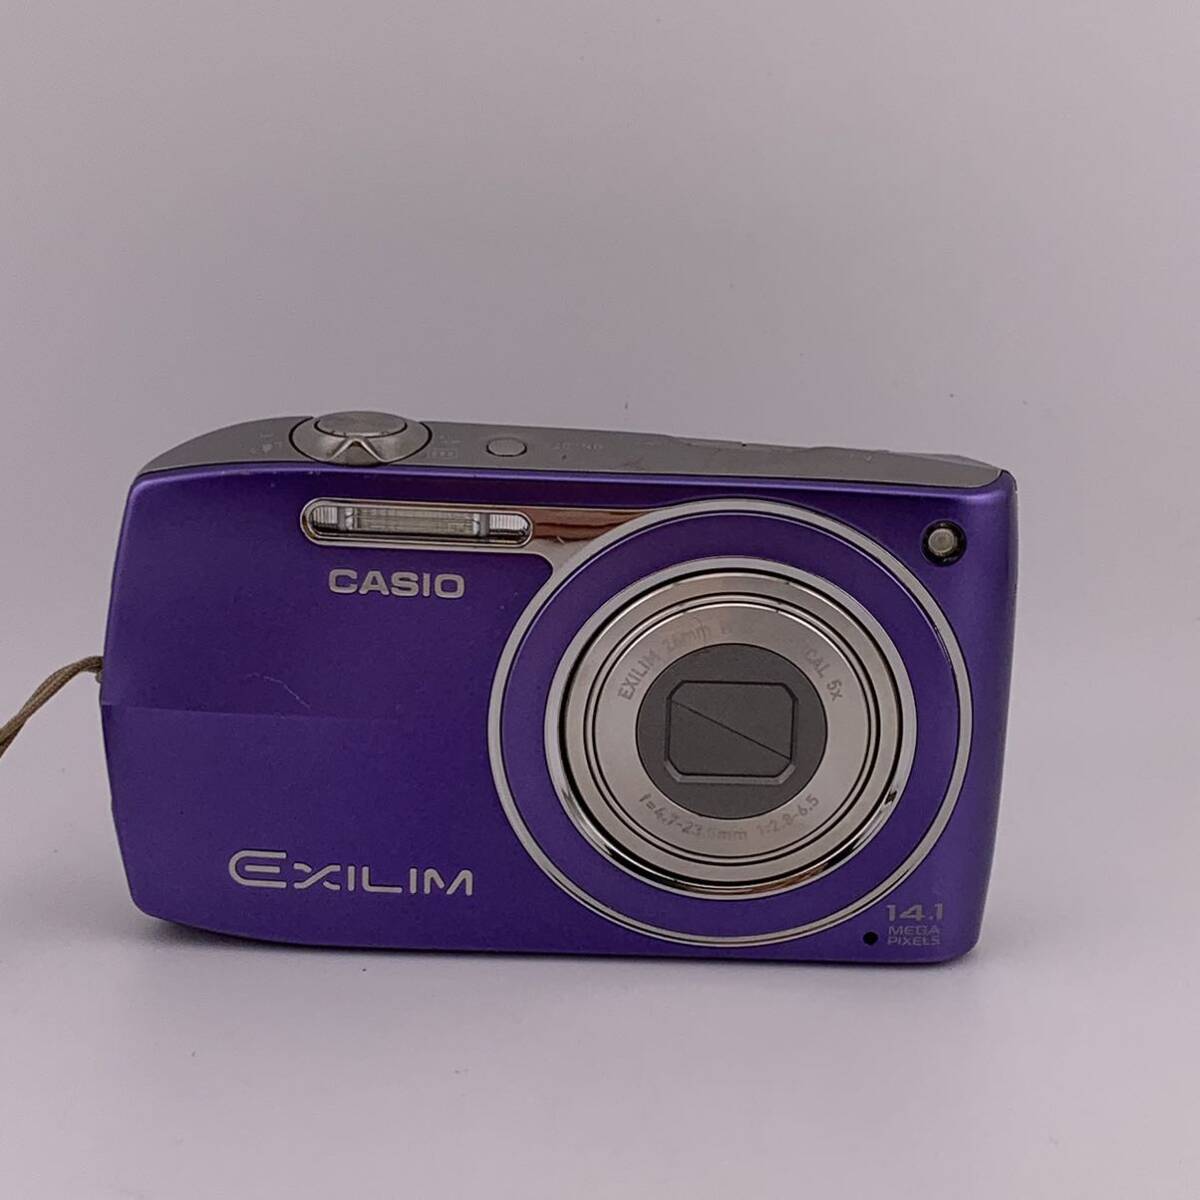 ★セット売り★ CASIO EXILIM EX-Z2000 14.1 MEGA PIXELS コンパクトデジタルカメラ デジカメ バッテリー 充電器 説明書 【S81179-655】の画像2